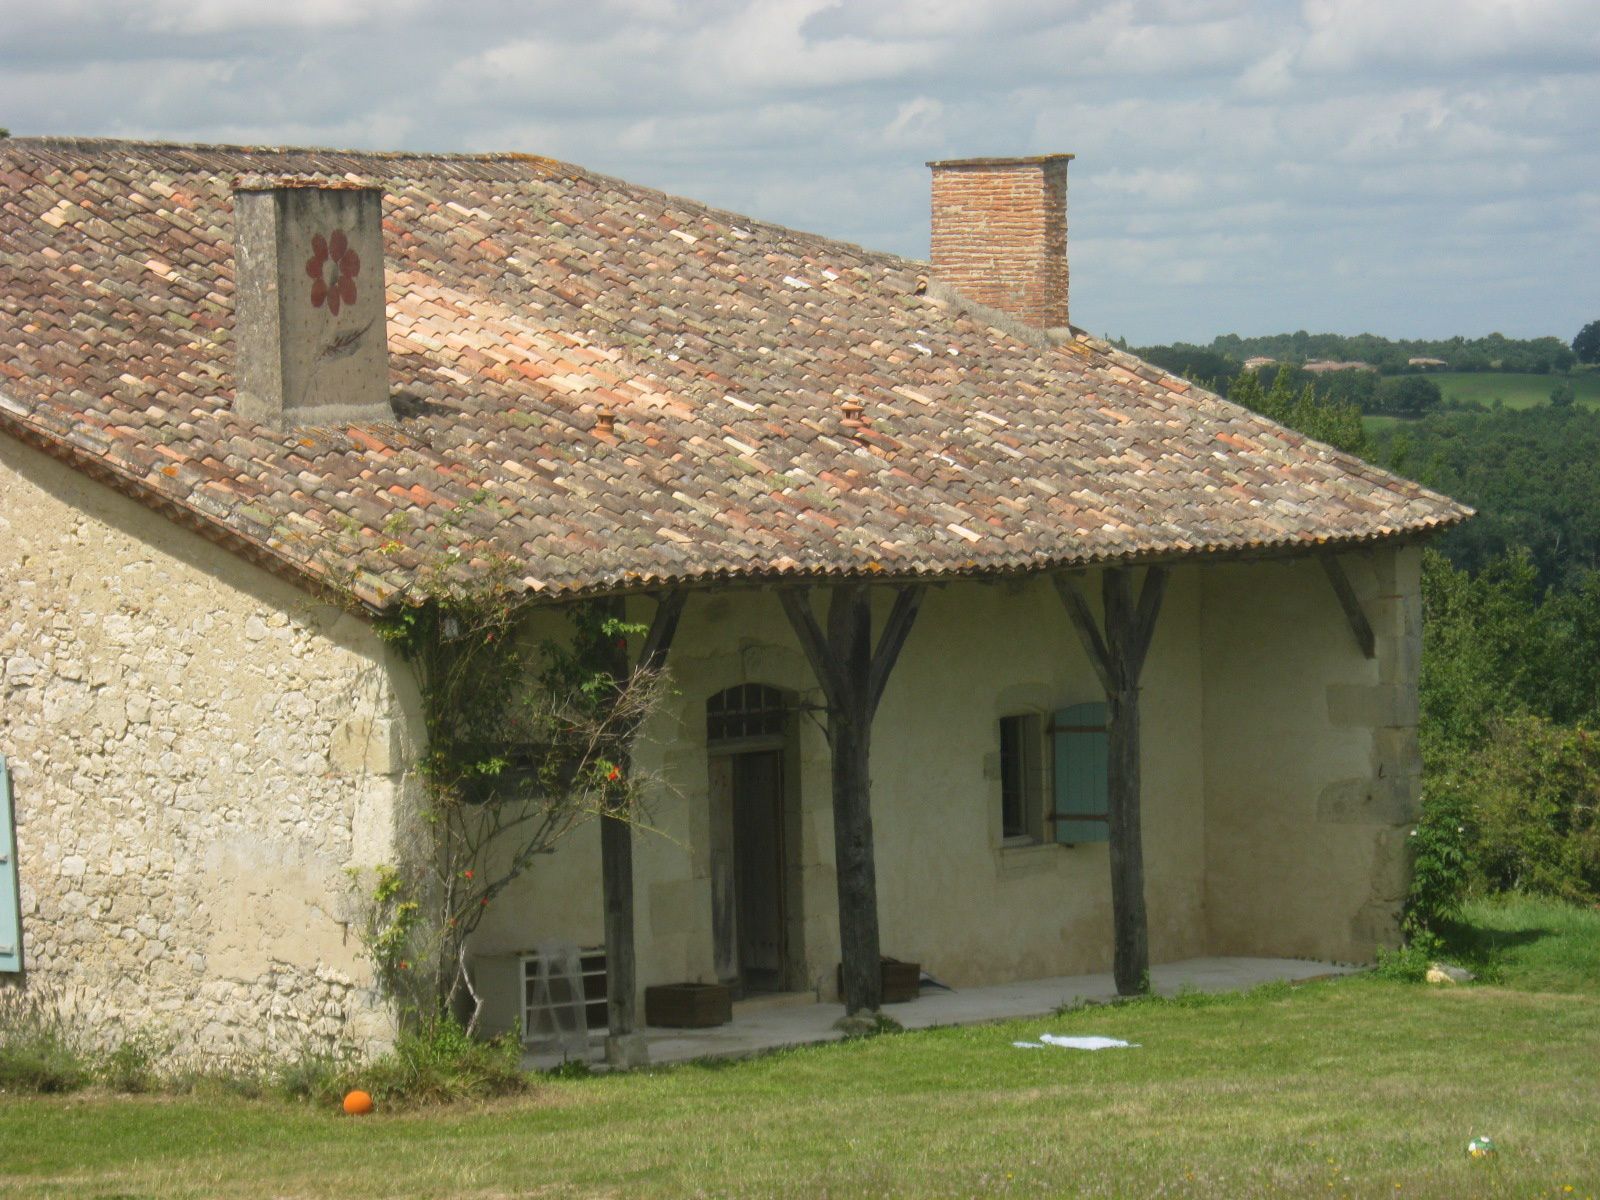 un ancien relais de poste du 13ème siècle joliment rénové et une cheminée fleurie sur une autre maison